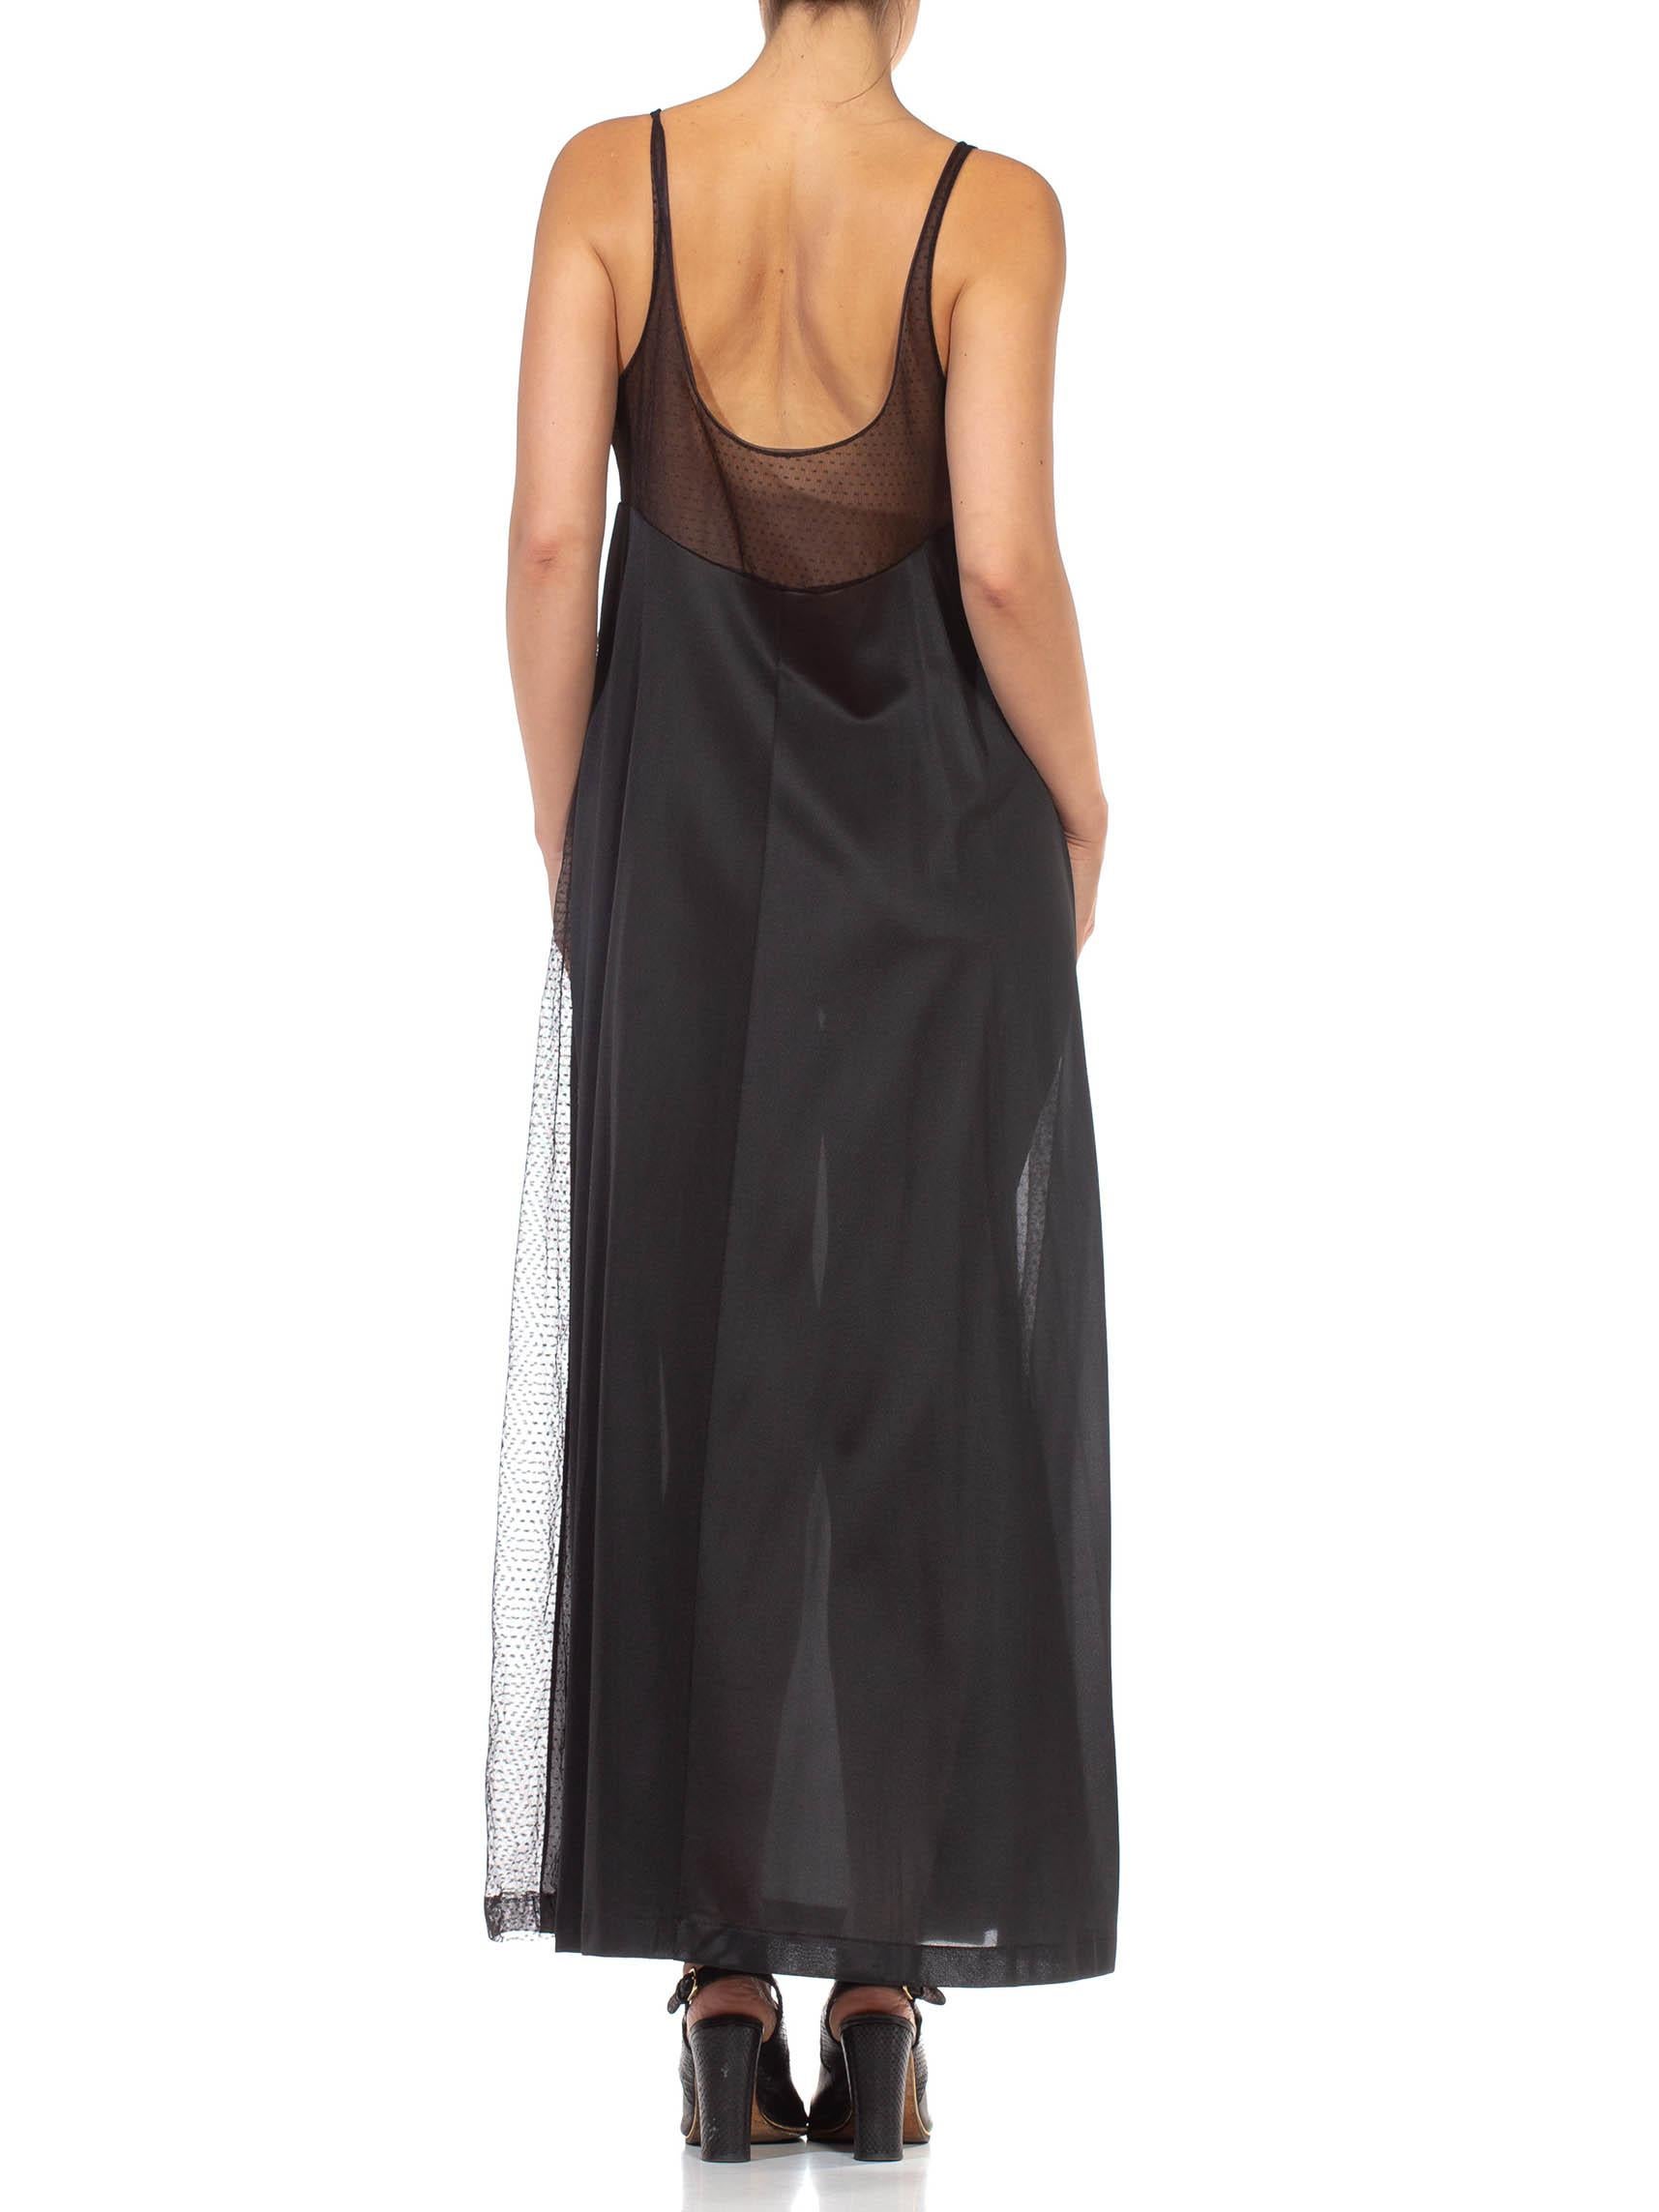 1970S Black Sheer Mesh Bodice Nylon Negligee Slip Dress For Sale 6